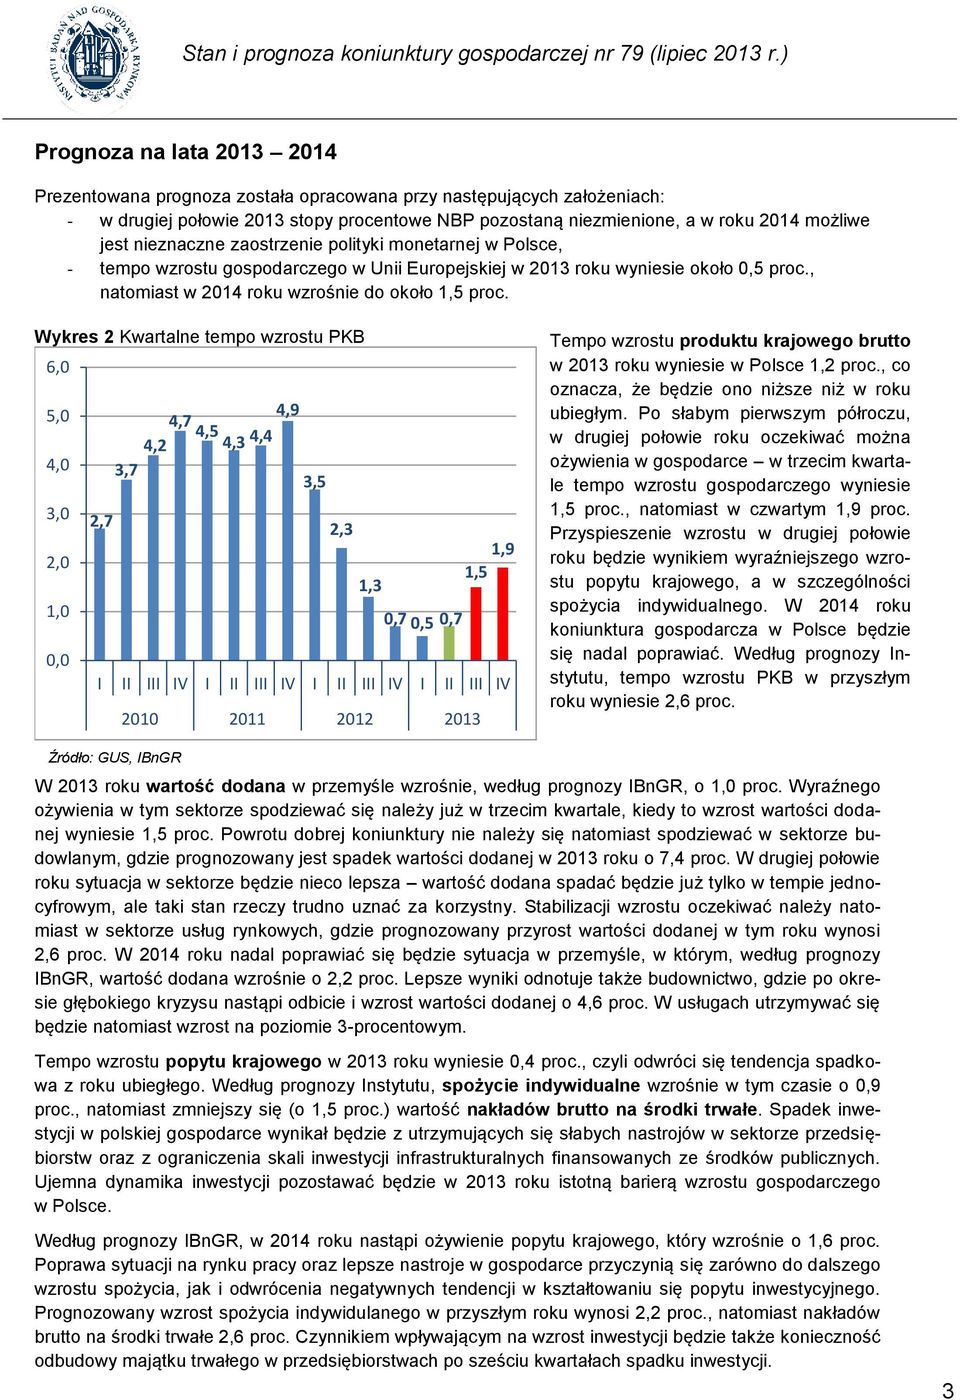 nieznaczne zaostrzenie polityki monetarnej w Polsce, - tempo wzrostu gospodarczego w Unii Europejskiej w 2013 roku wyniesie około 0,5 proc., natomiast w 2014 roku wzrośnie do około 1,5 proc.